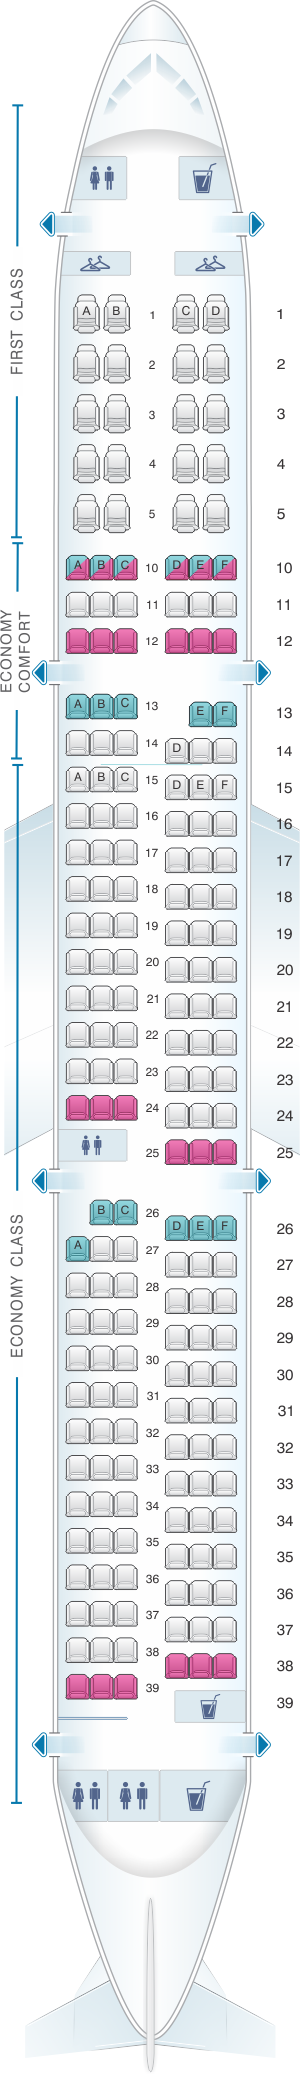 Plan de cabine Delta Air Lines Airbus A321 | SeatMaestro.fr